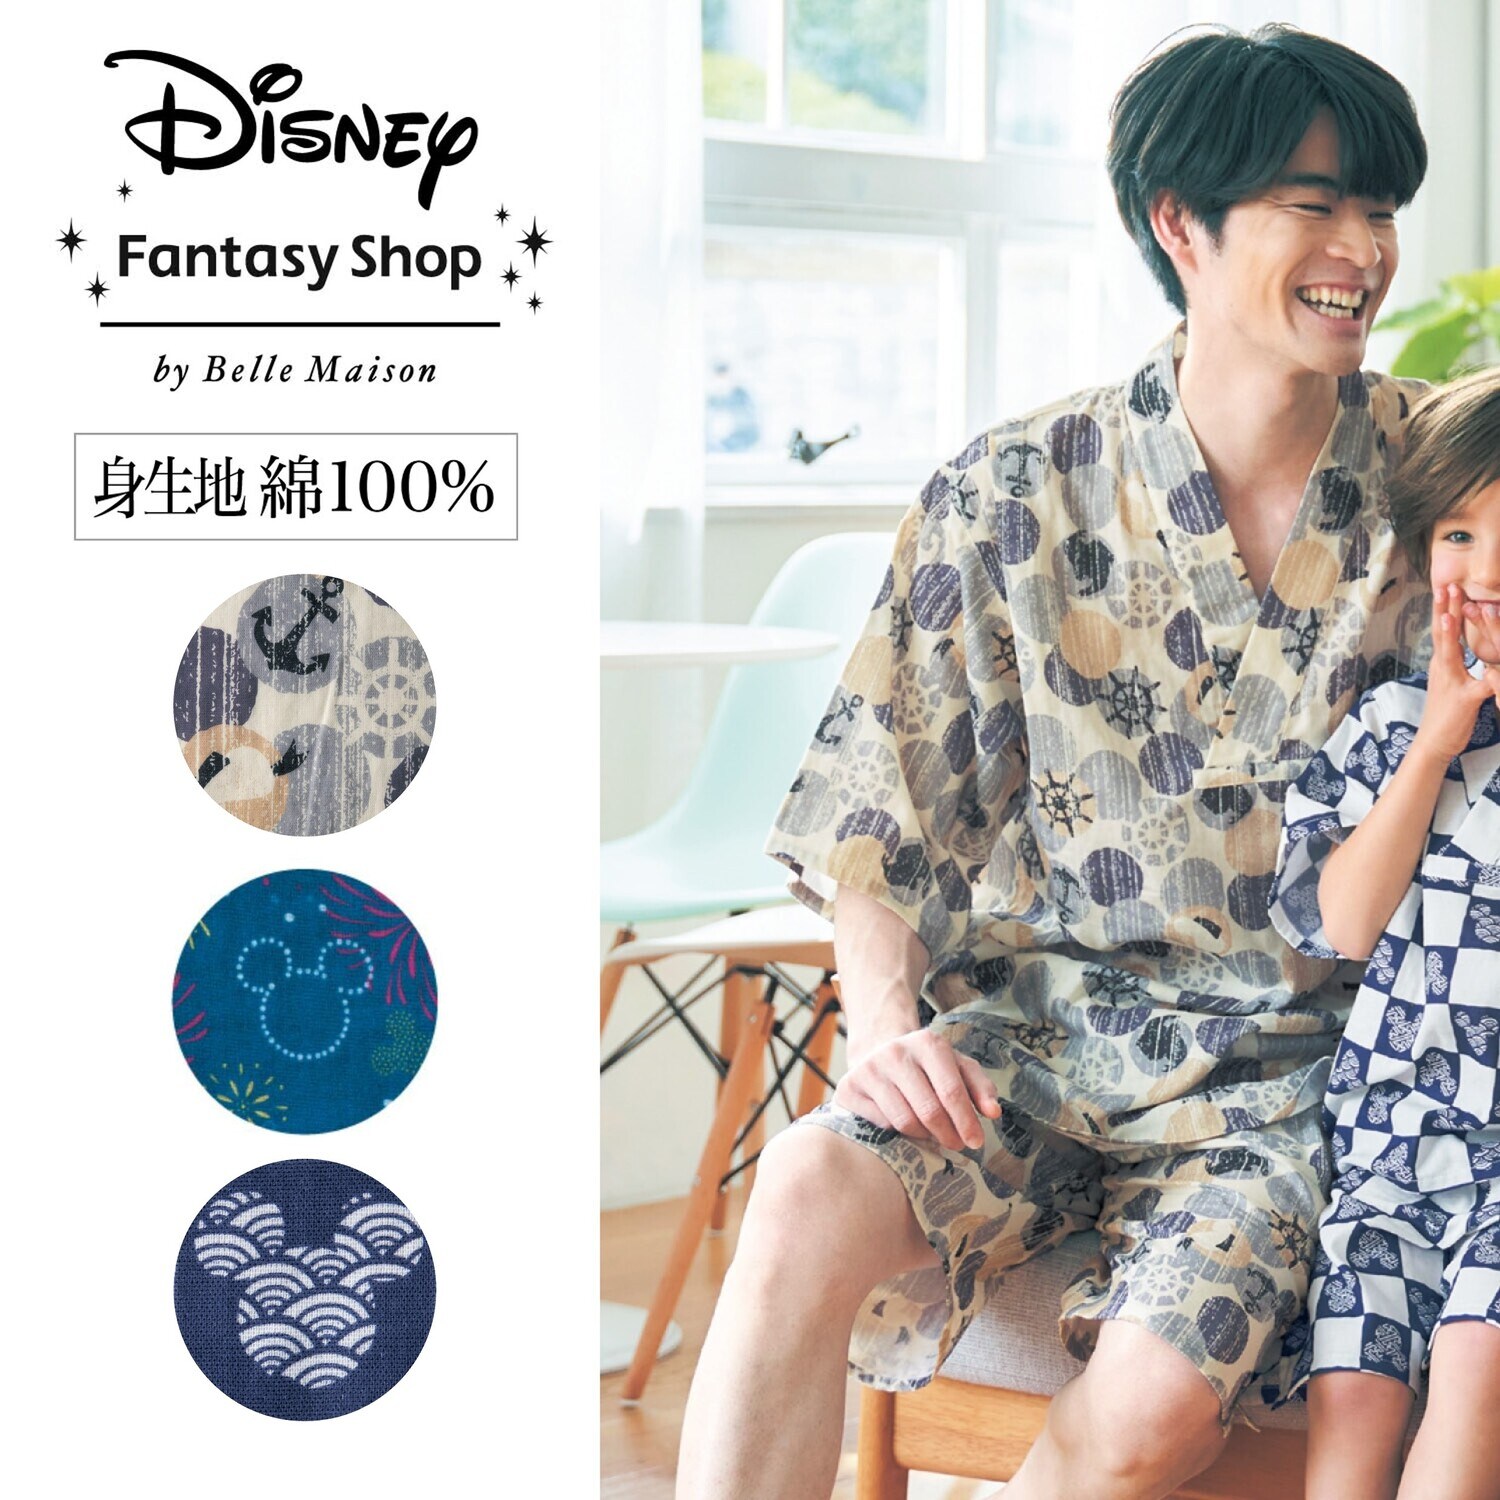 【ディズニー/Disney】メンズ綿100%ダブルガーゼかぶり甚平パジャマ「ミッキーモチーフ」